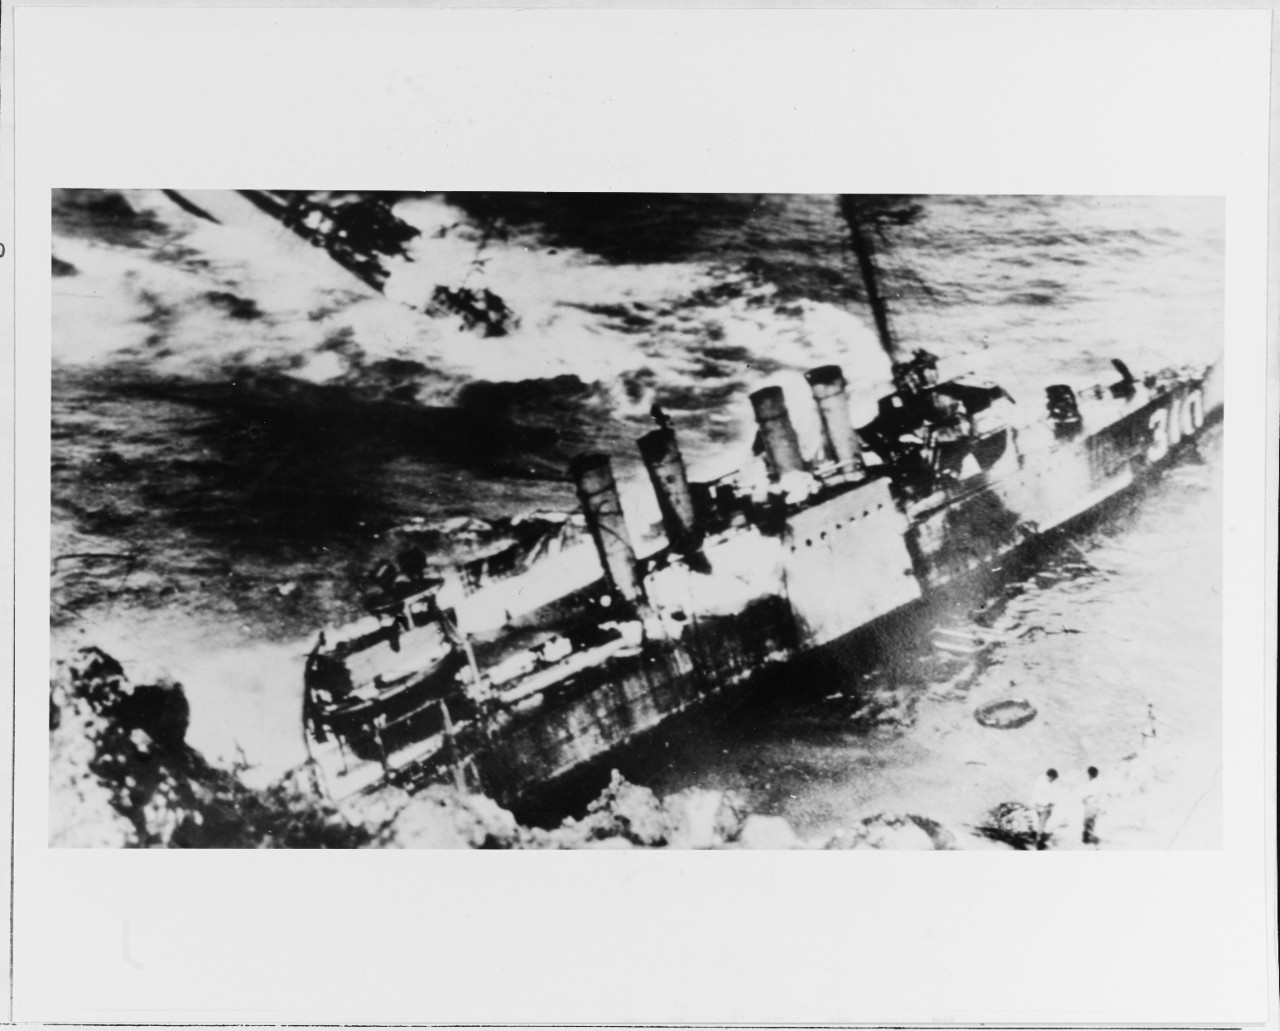 Photo #: NH 42174  Honda Point disaster, September 1923